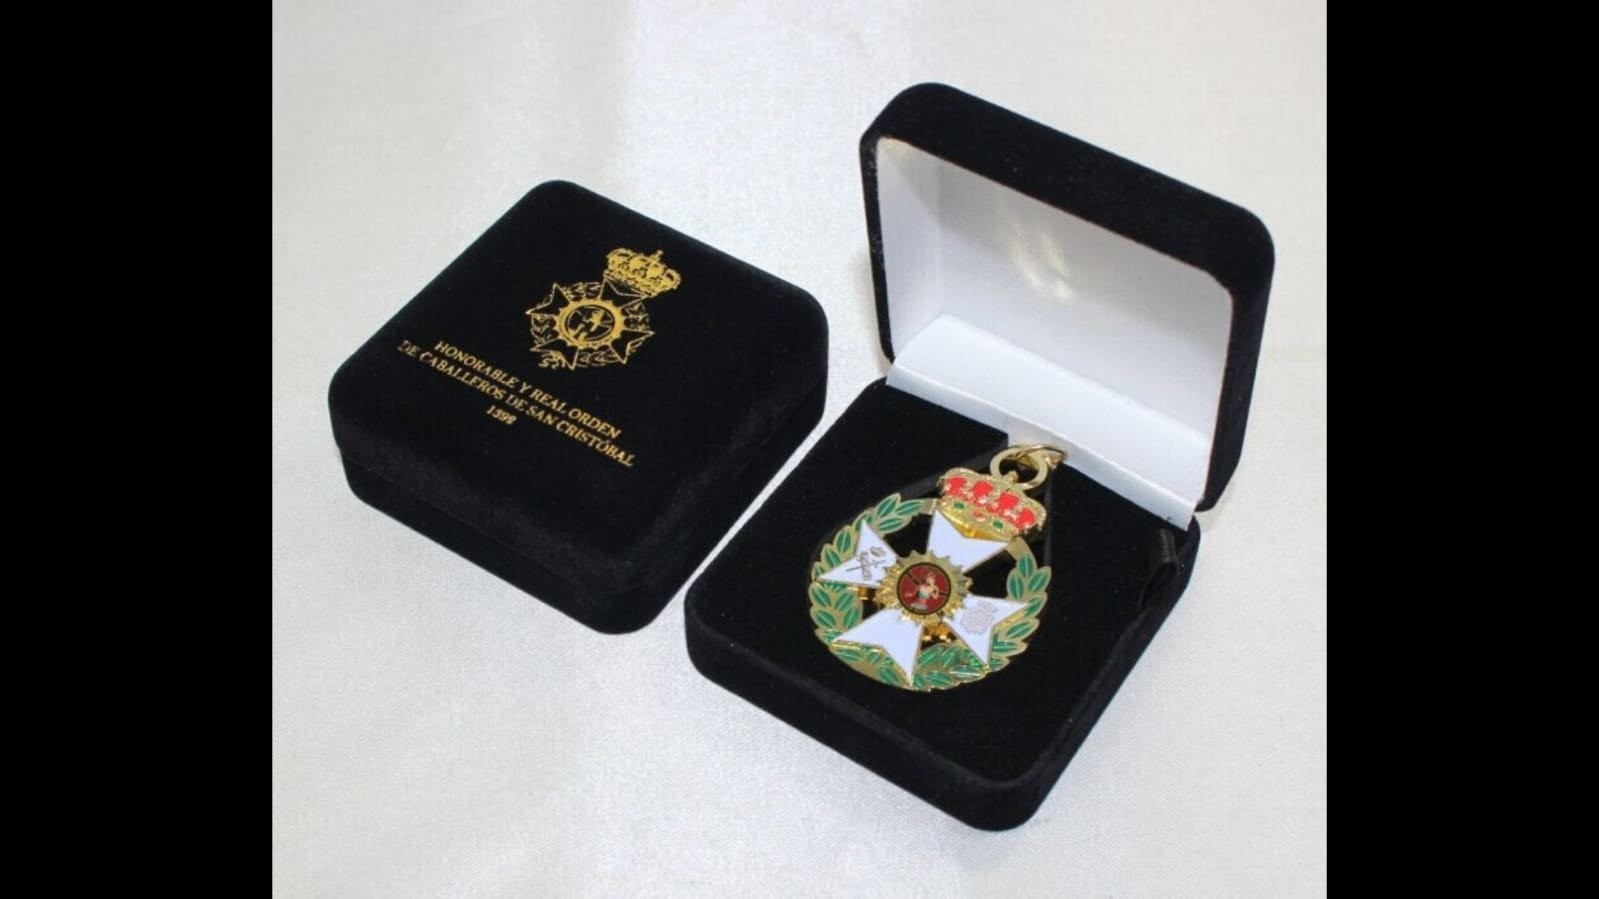 Medalla de la Real Orden de Caballeros de San Cristóbal.